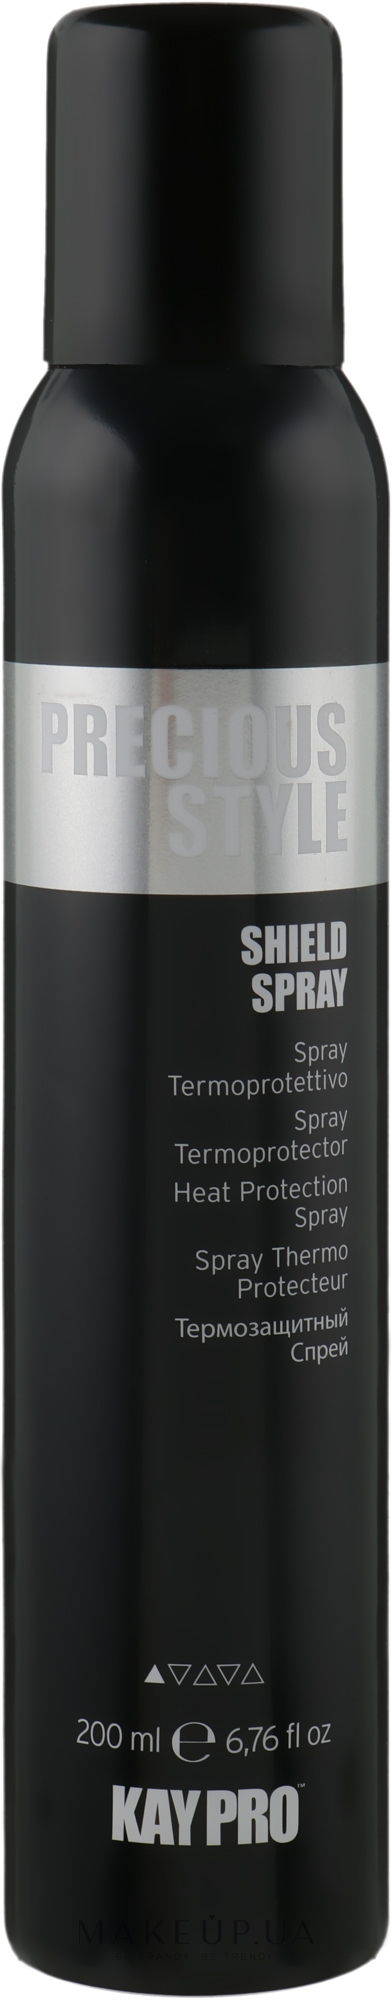 Термозахисний спрей з аргановою олією - KayPro Precious Style Shield Spray — фото 200ml